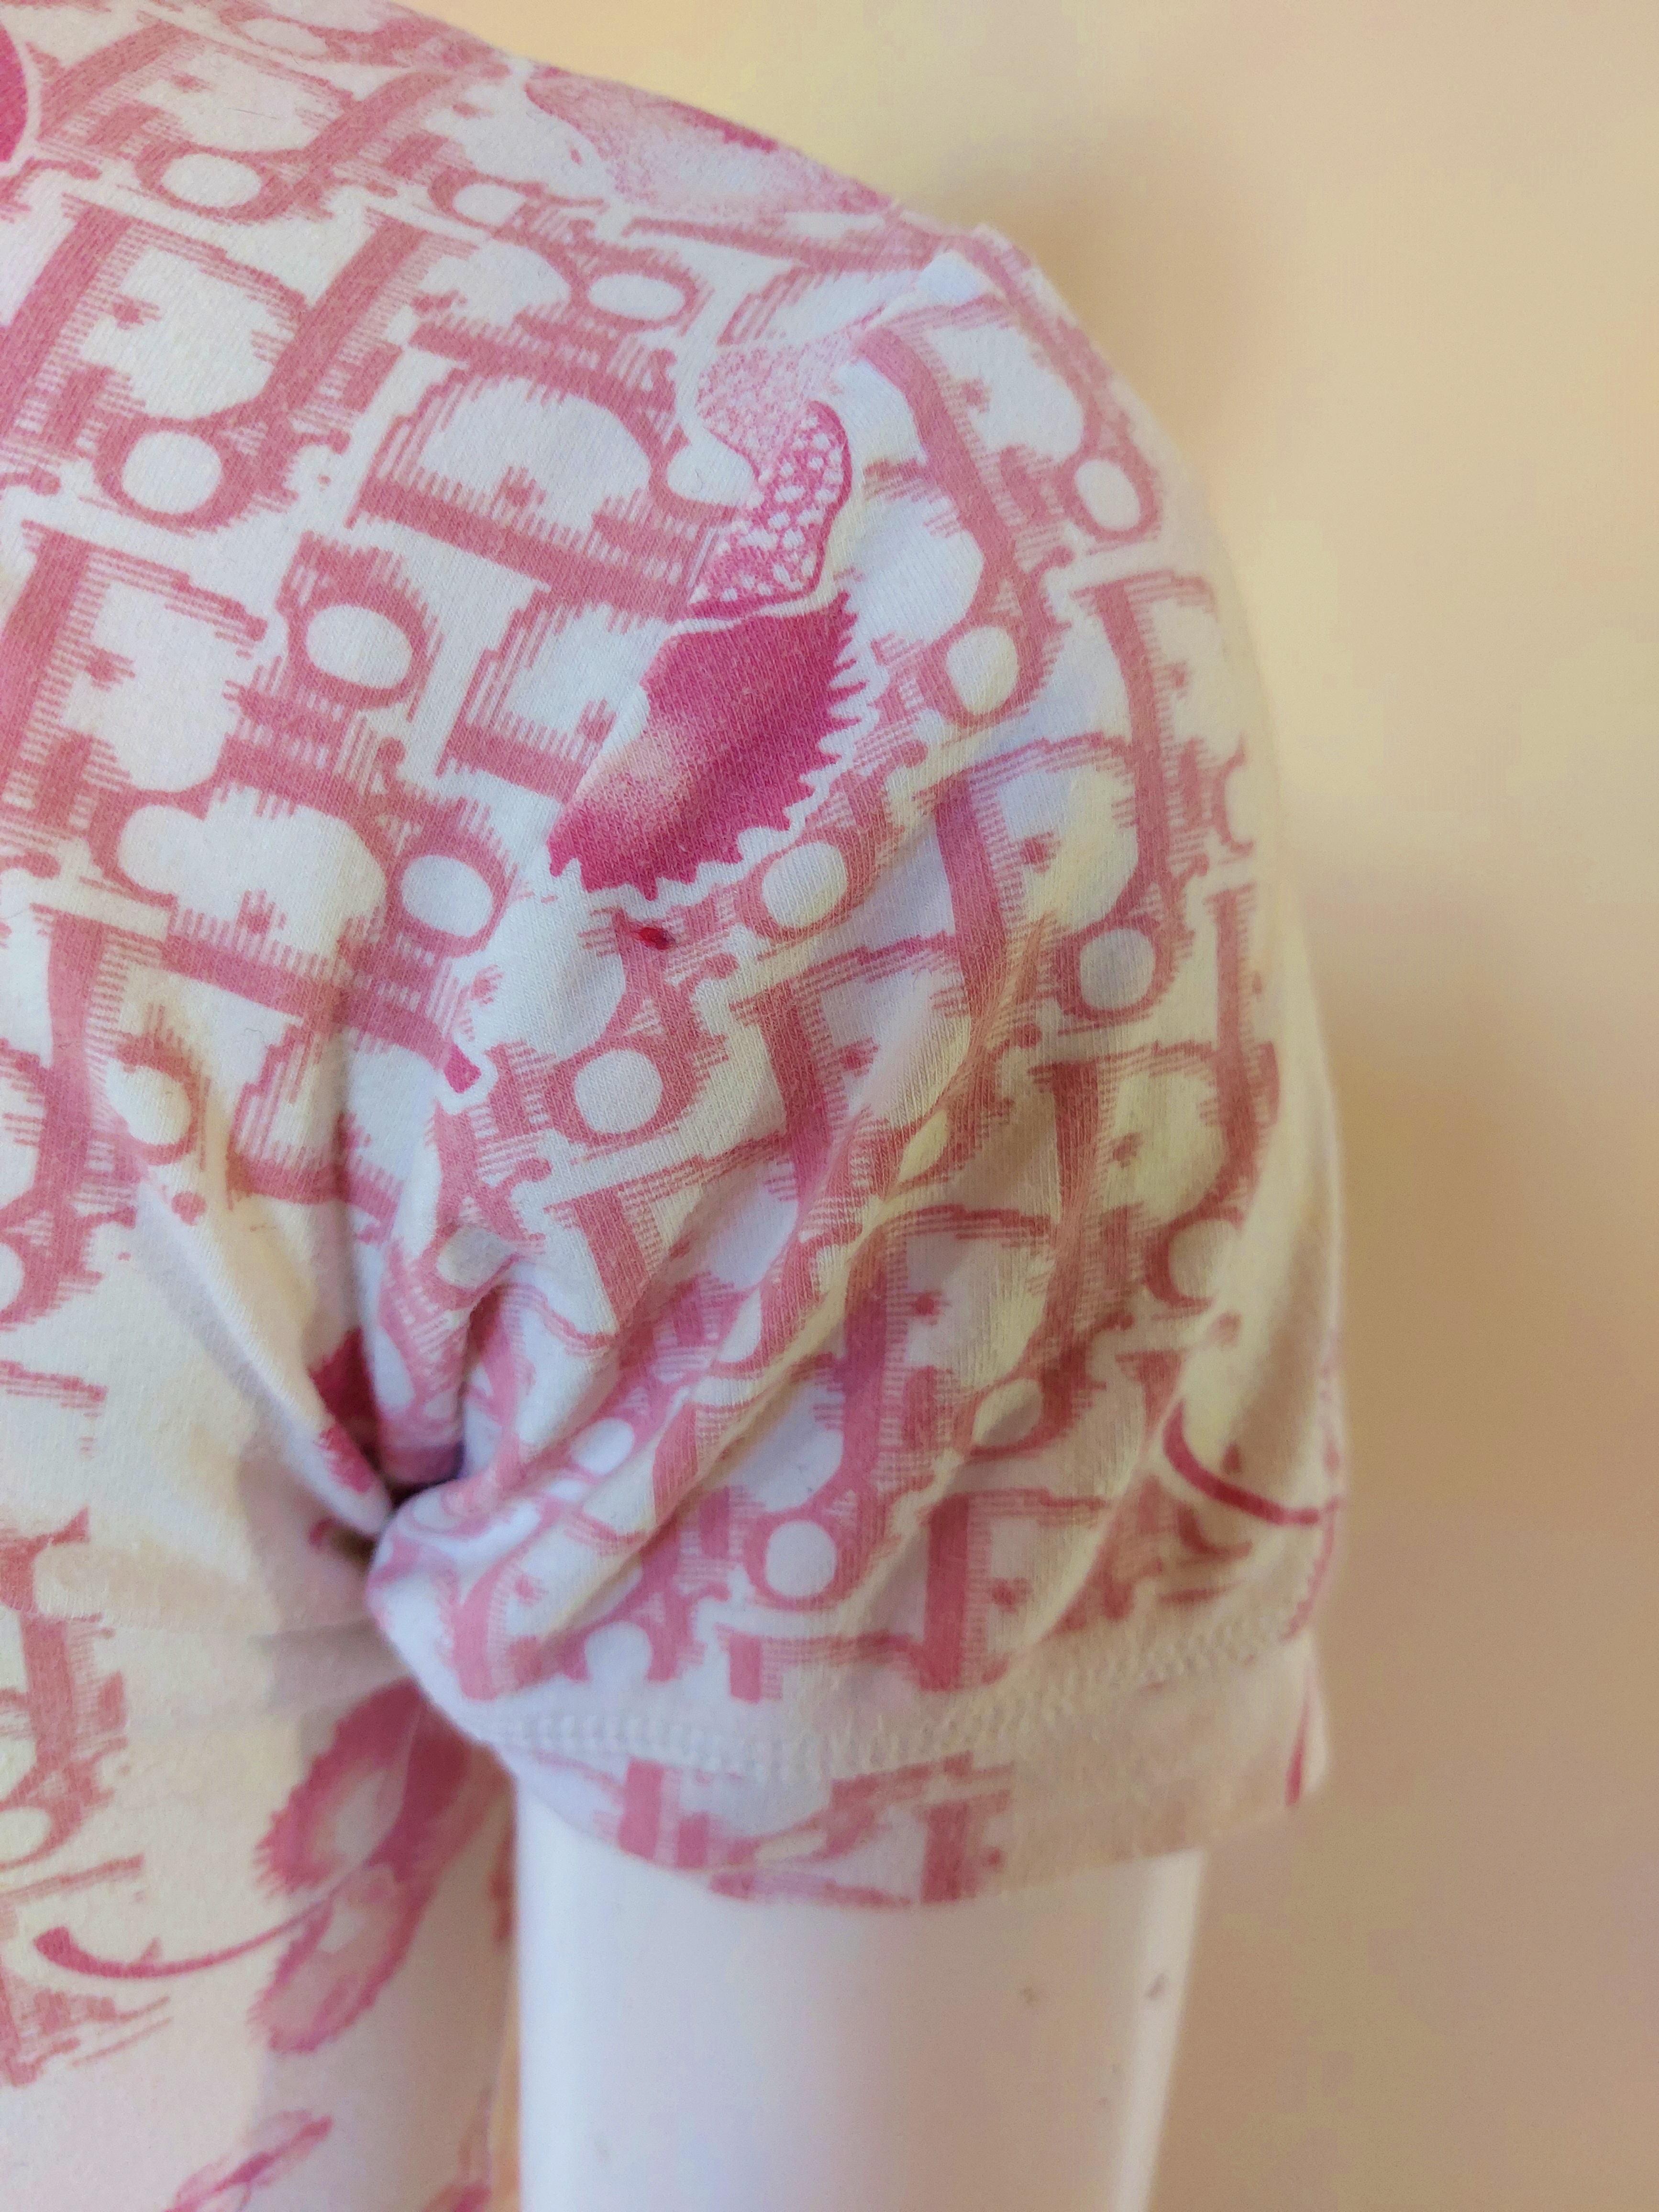 Women's Christian Dior J’adore Cherry Blossom Monogram Floral Logo Pink Top Shirt